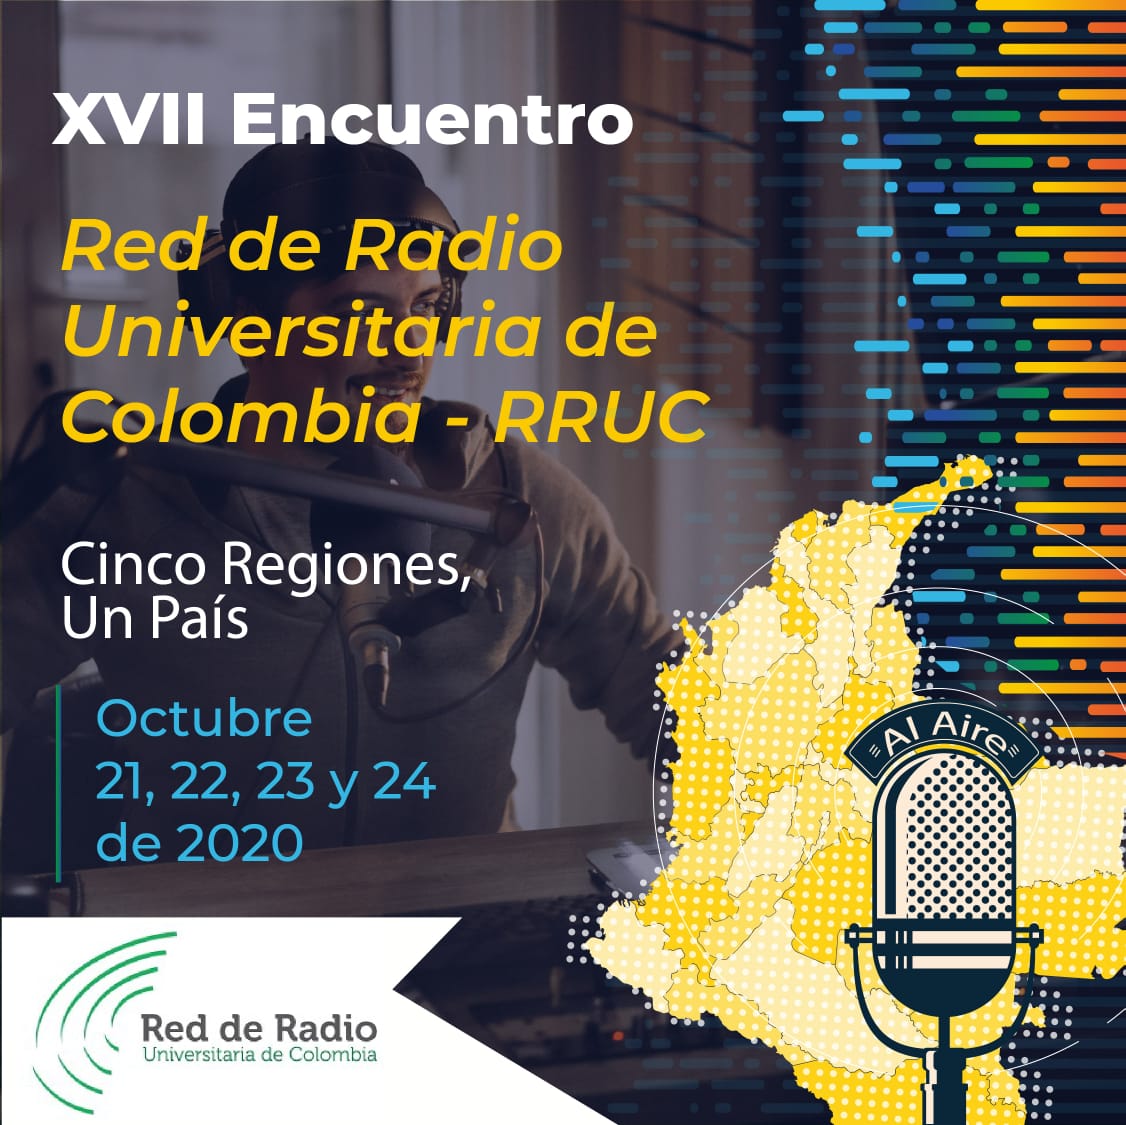 XVII Encuentro de la Red de Radio Universitaria de Colombia-RRUC